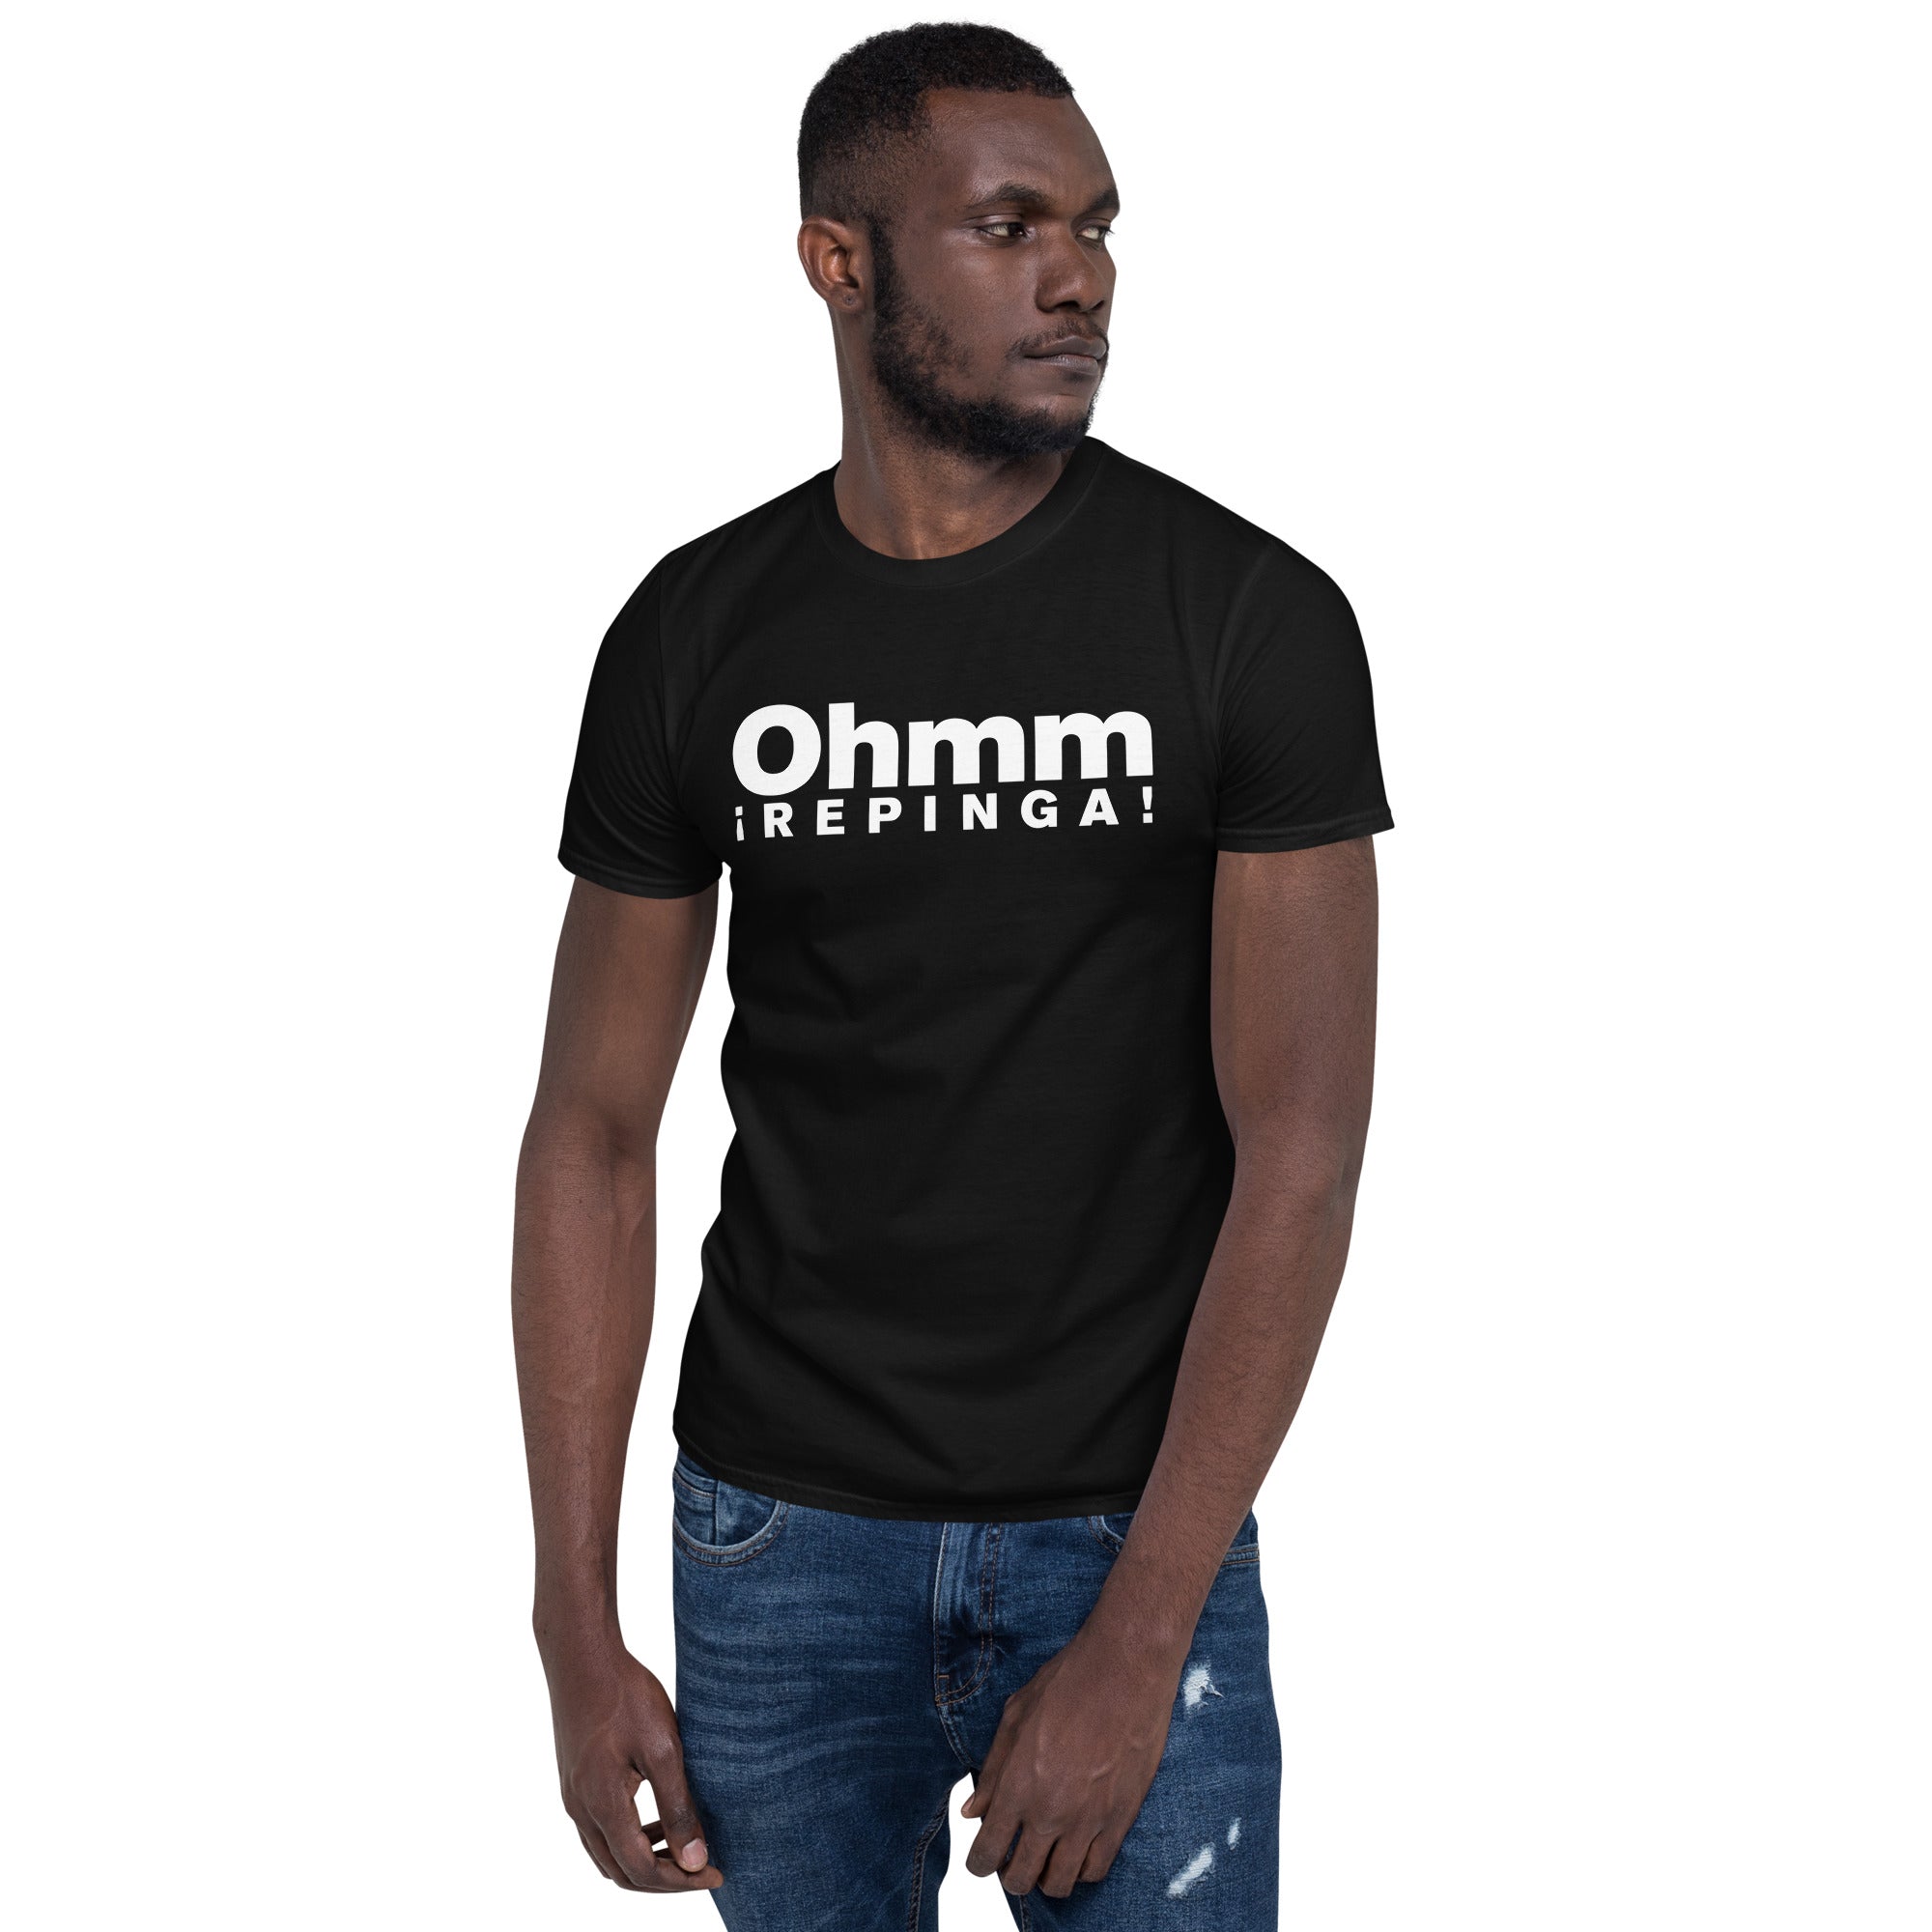 Ohmm | Camiseta de manga corta unisex